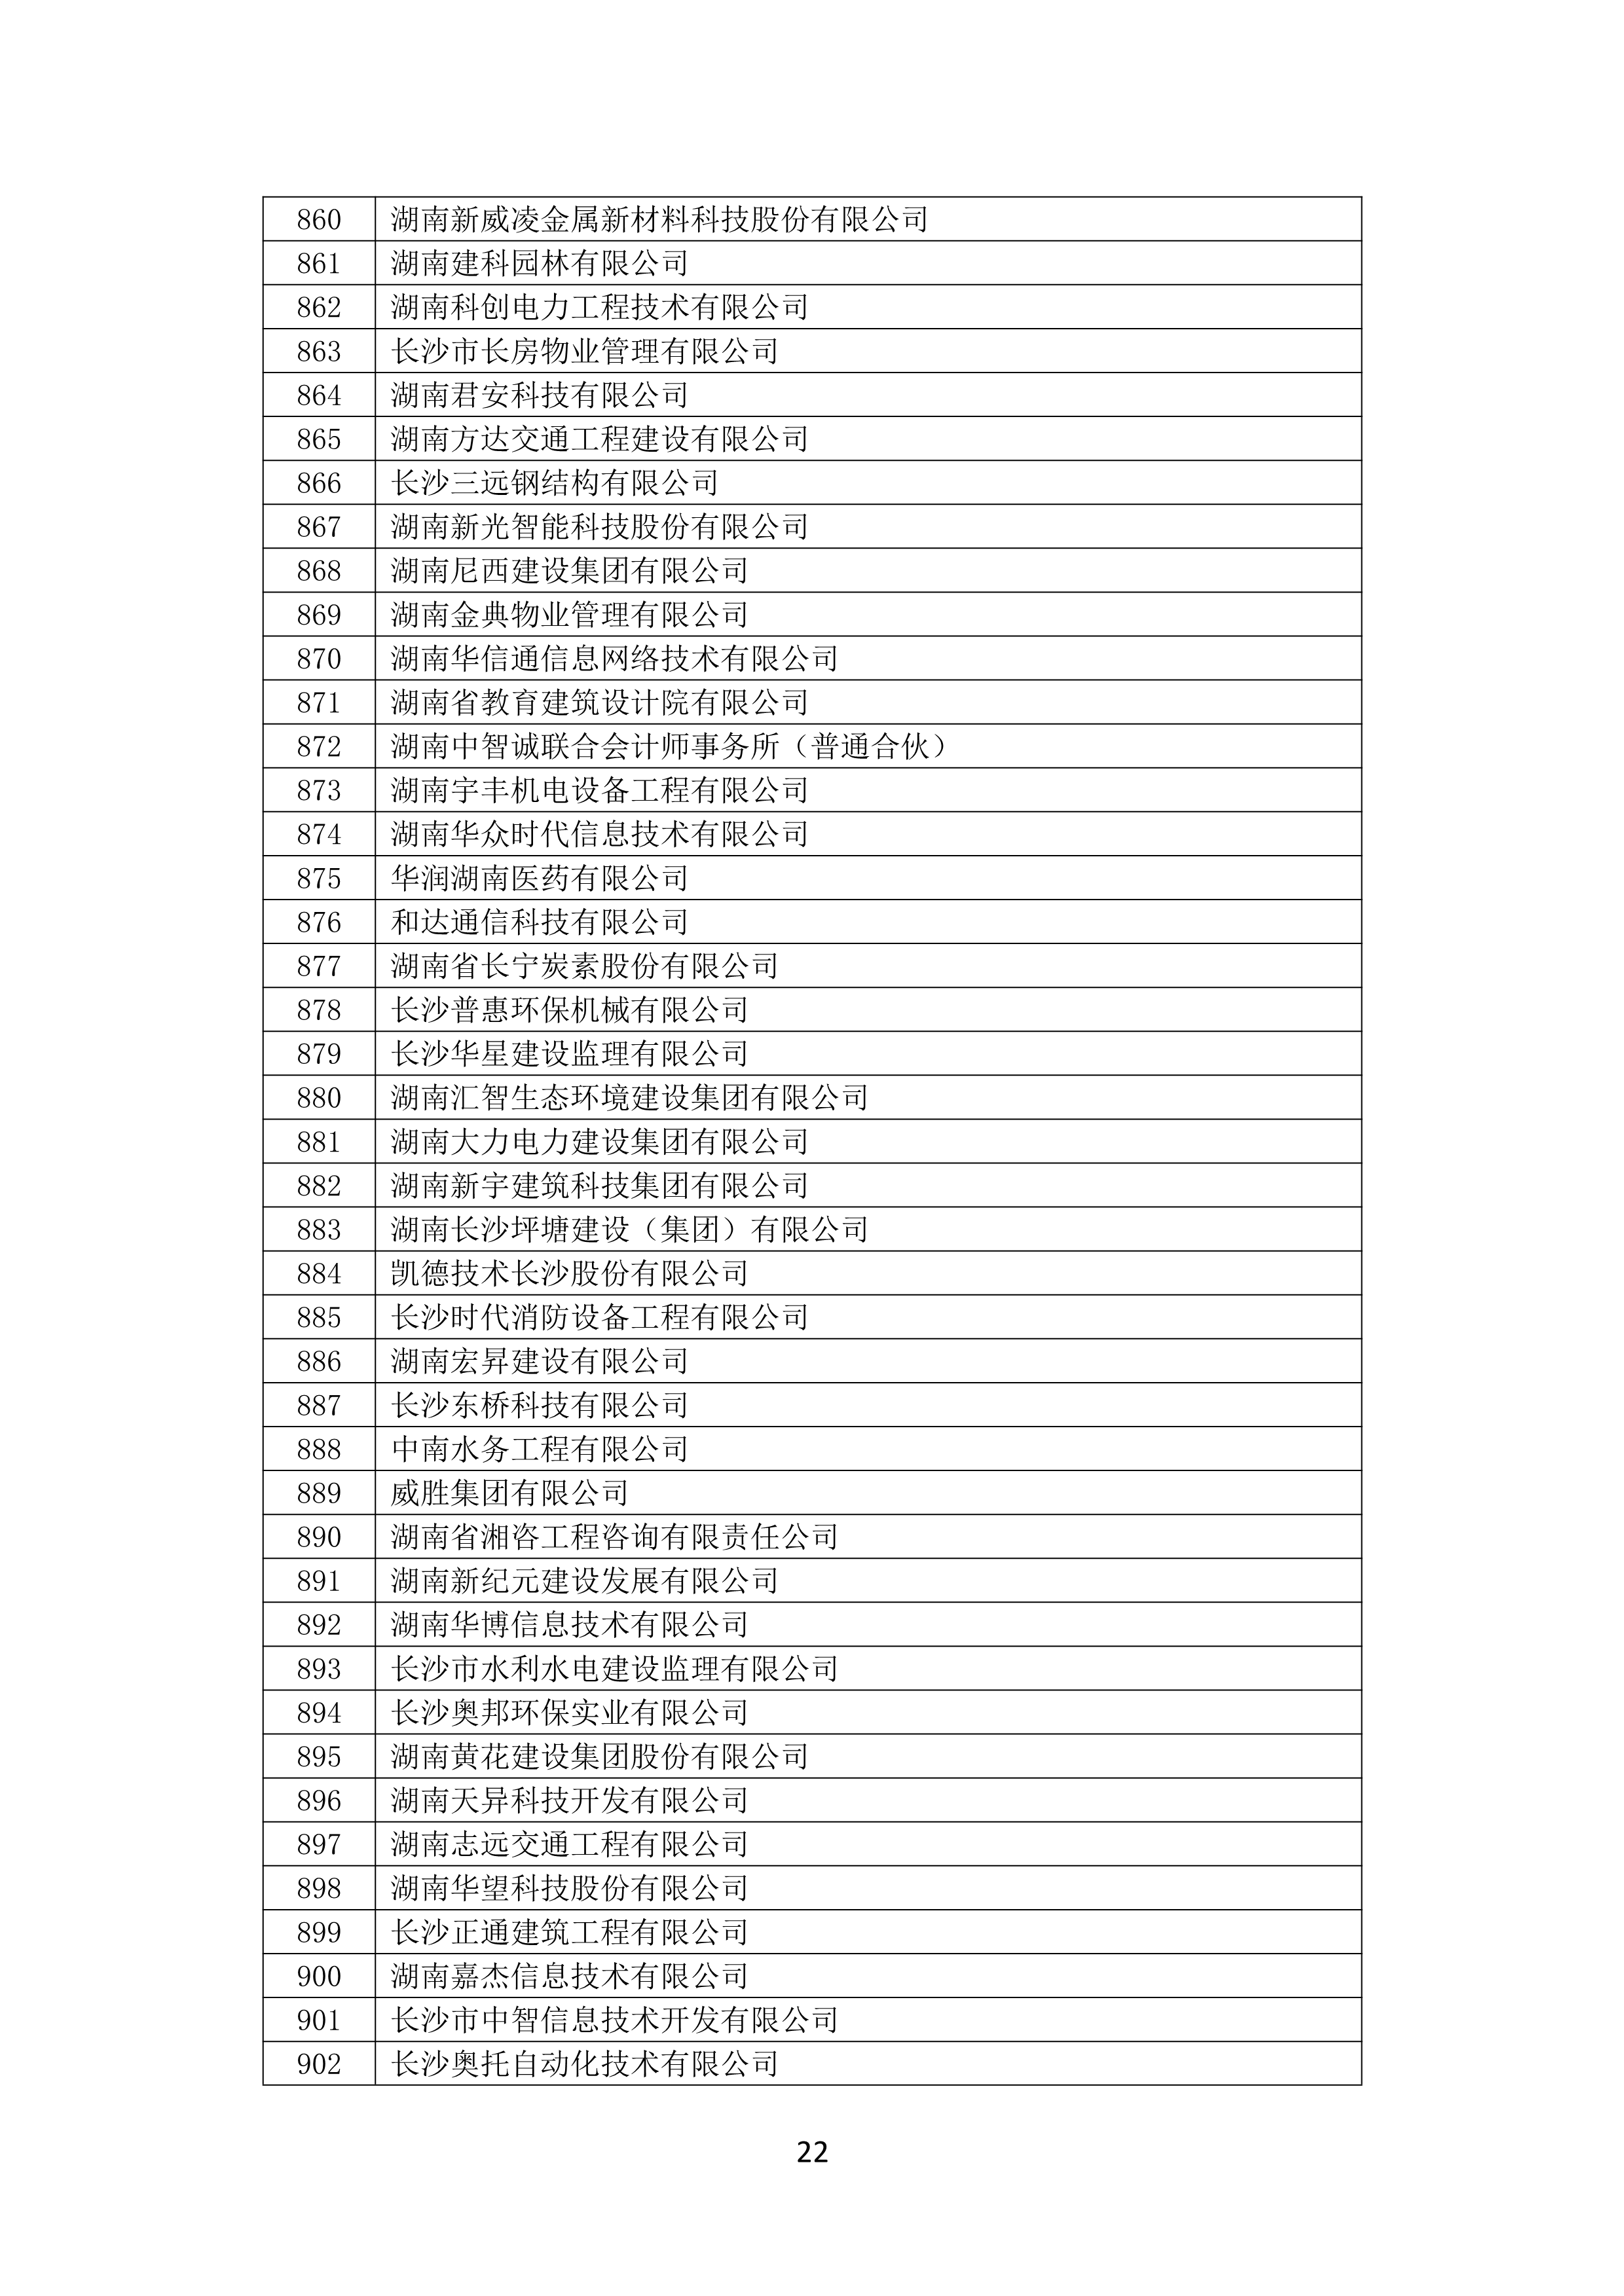 2021 年(nián)度湖南省守合同重信用企業名單_23.png